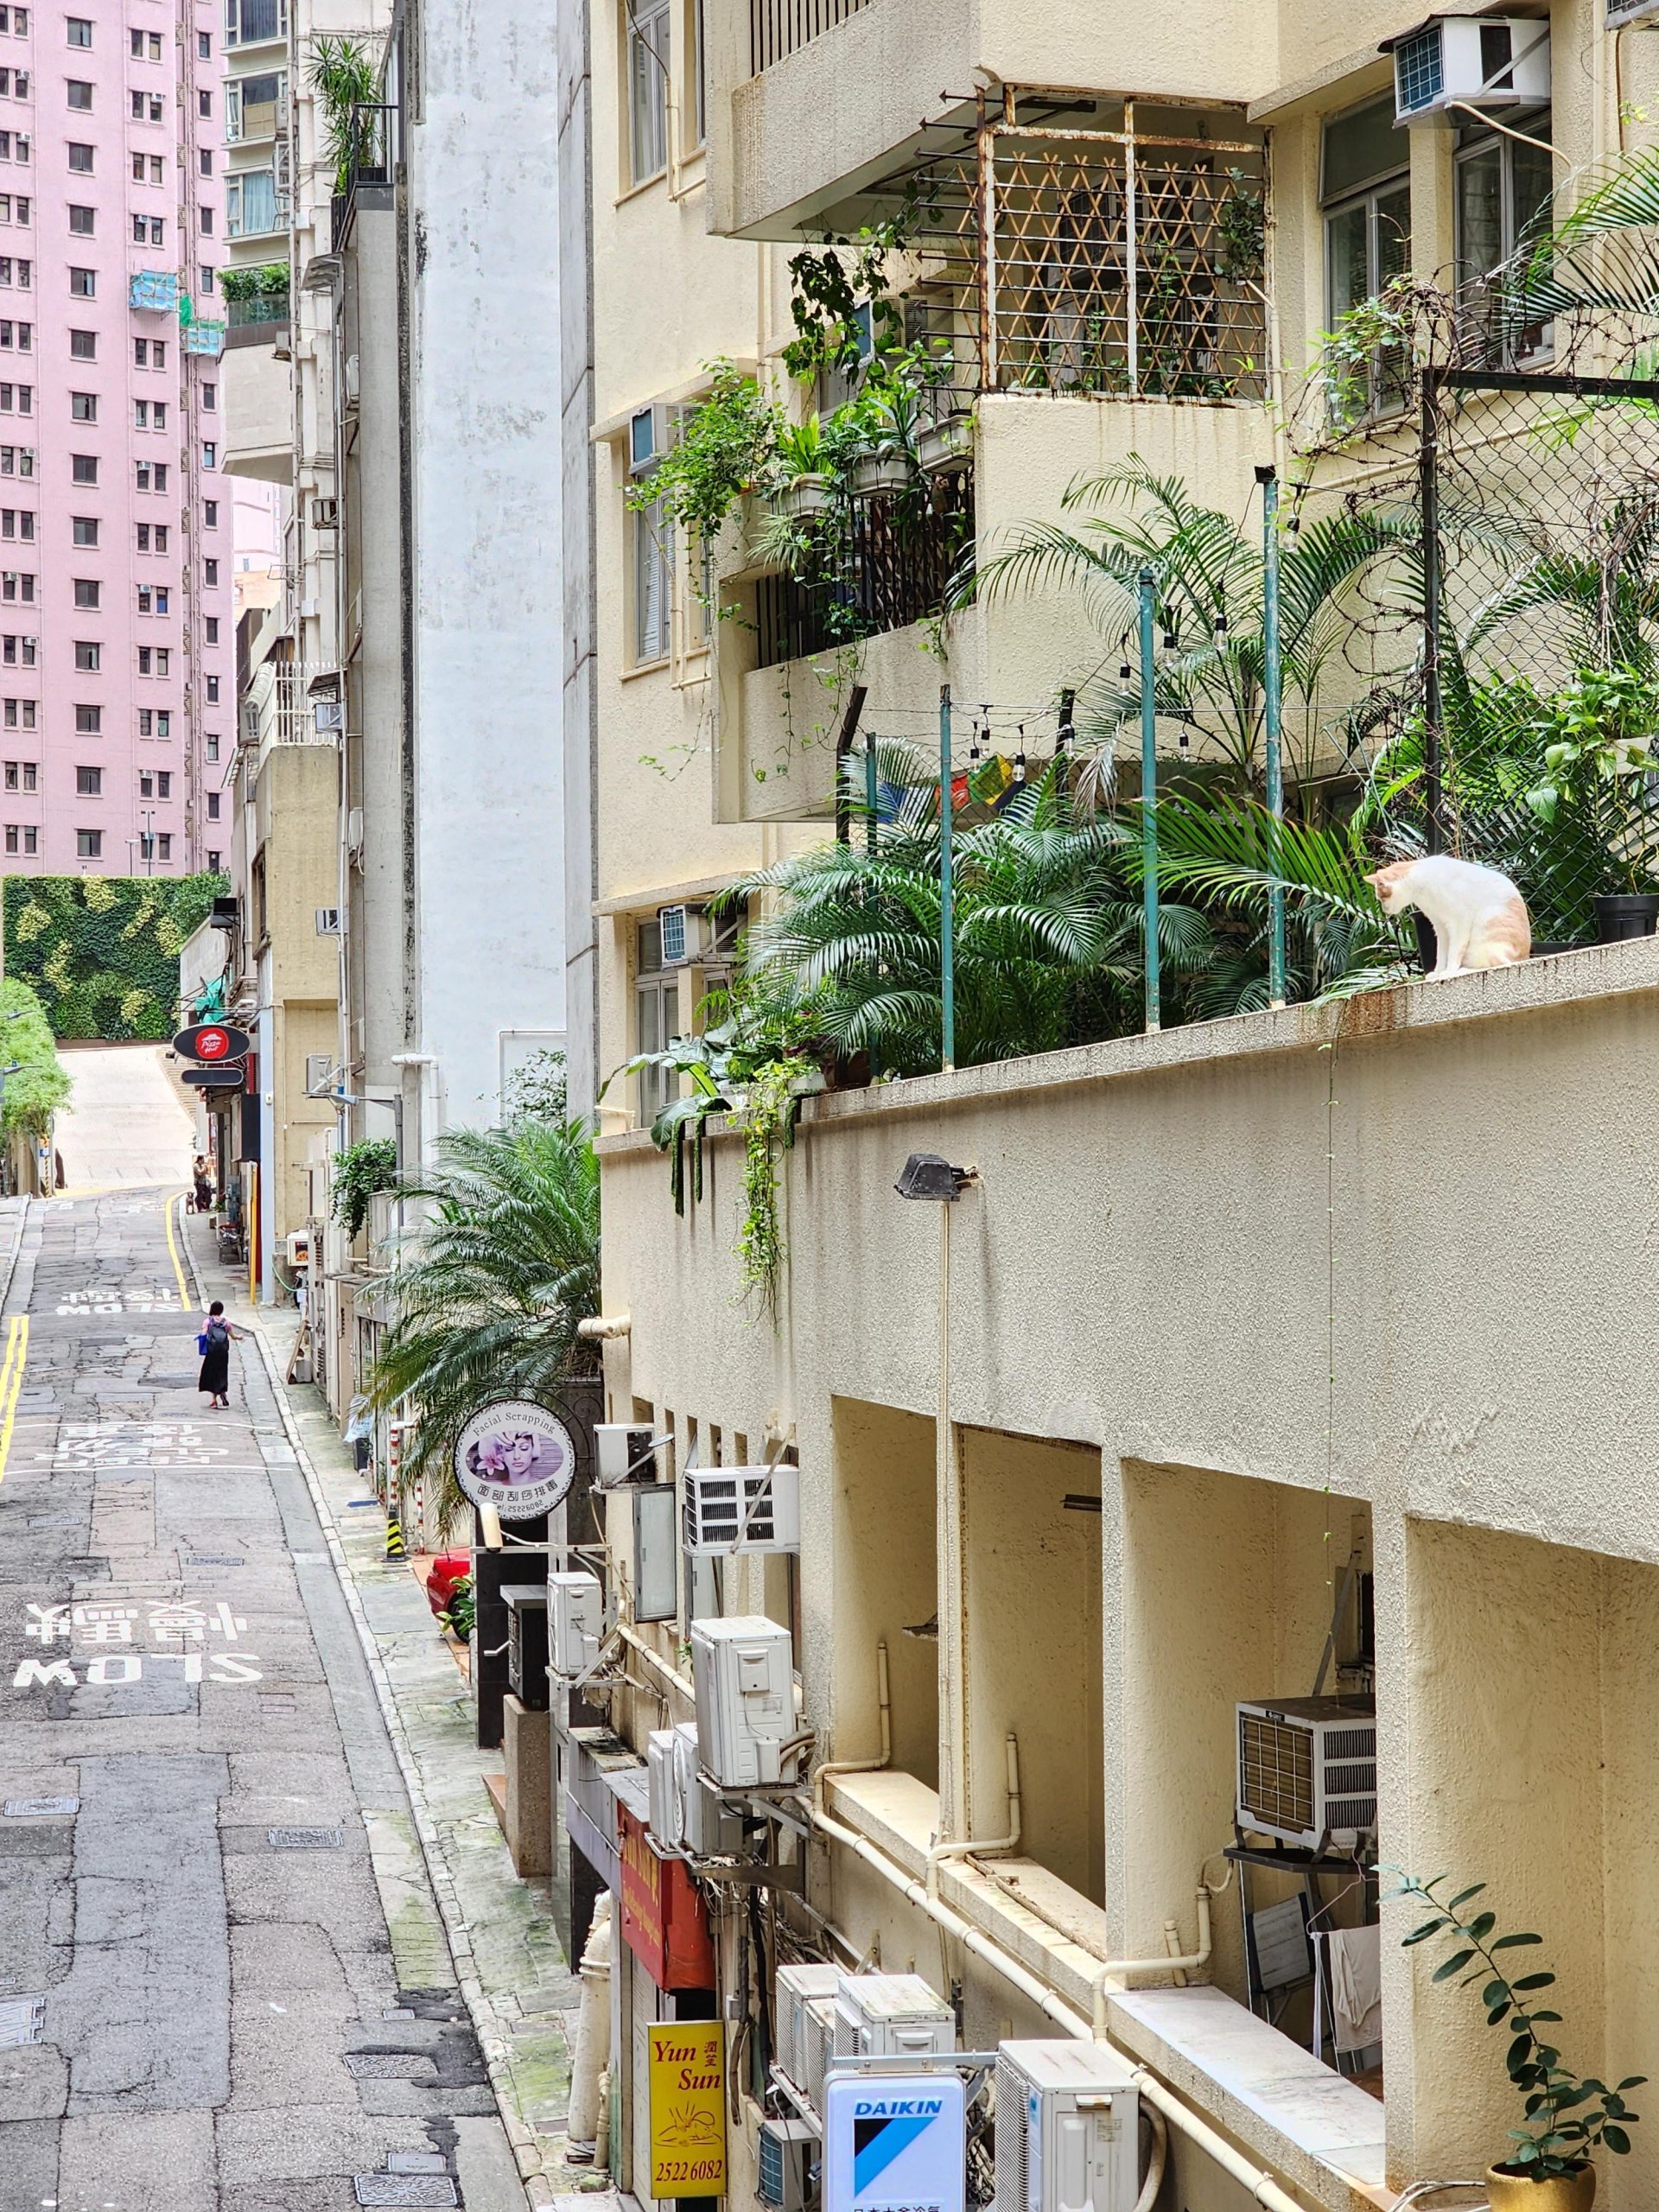 Cat Perch – Hong Kong, this morning